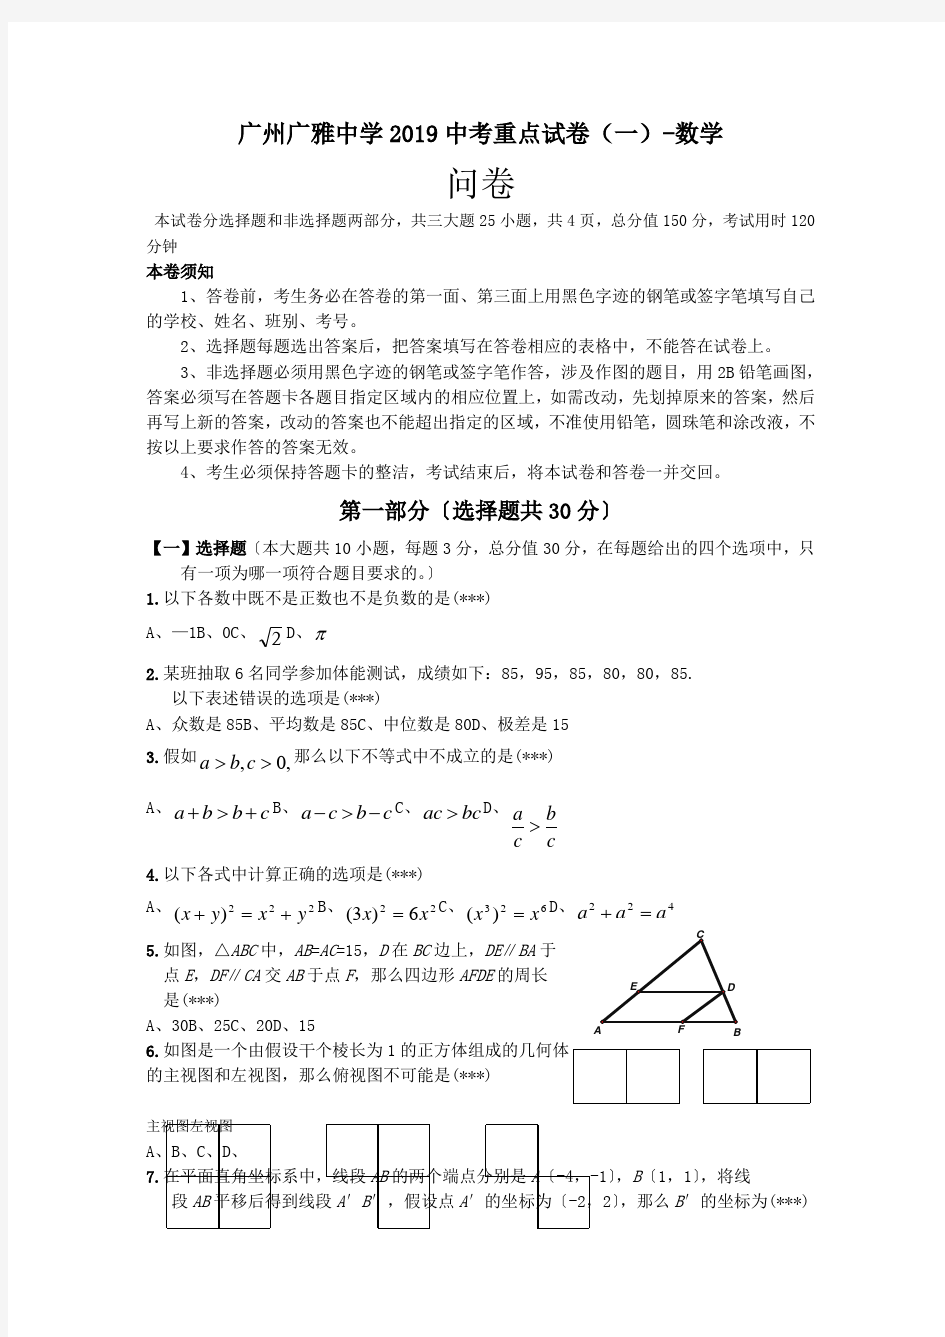 广州广雅中学2019中考重点试卷(一)-数学